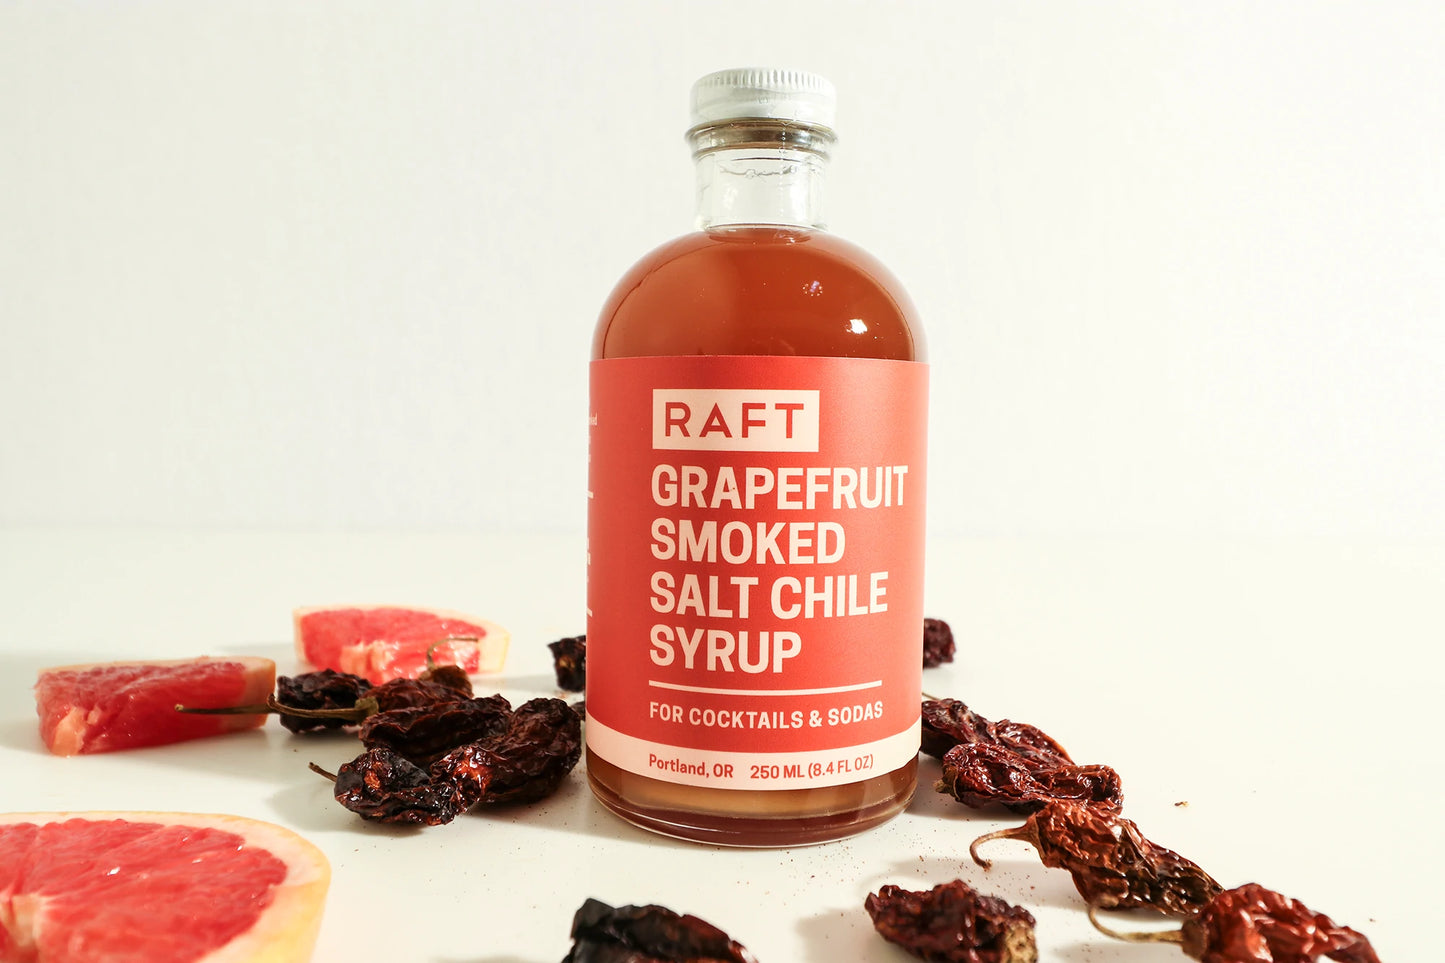 RAFT - Grapefruit Smoked Salt and Chile Syrup